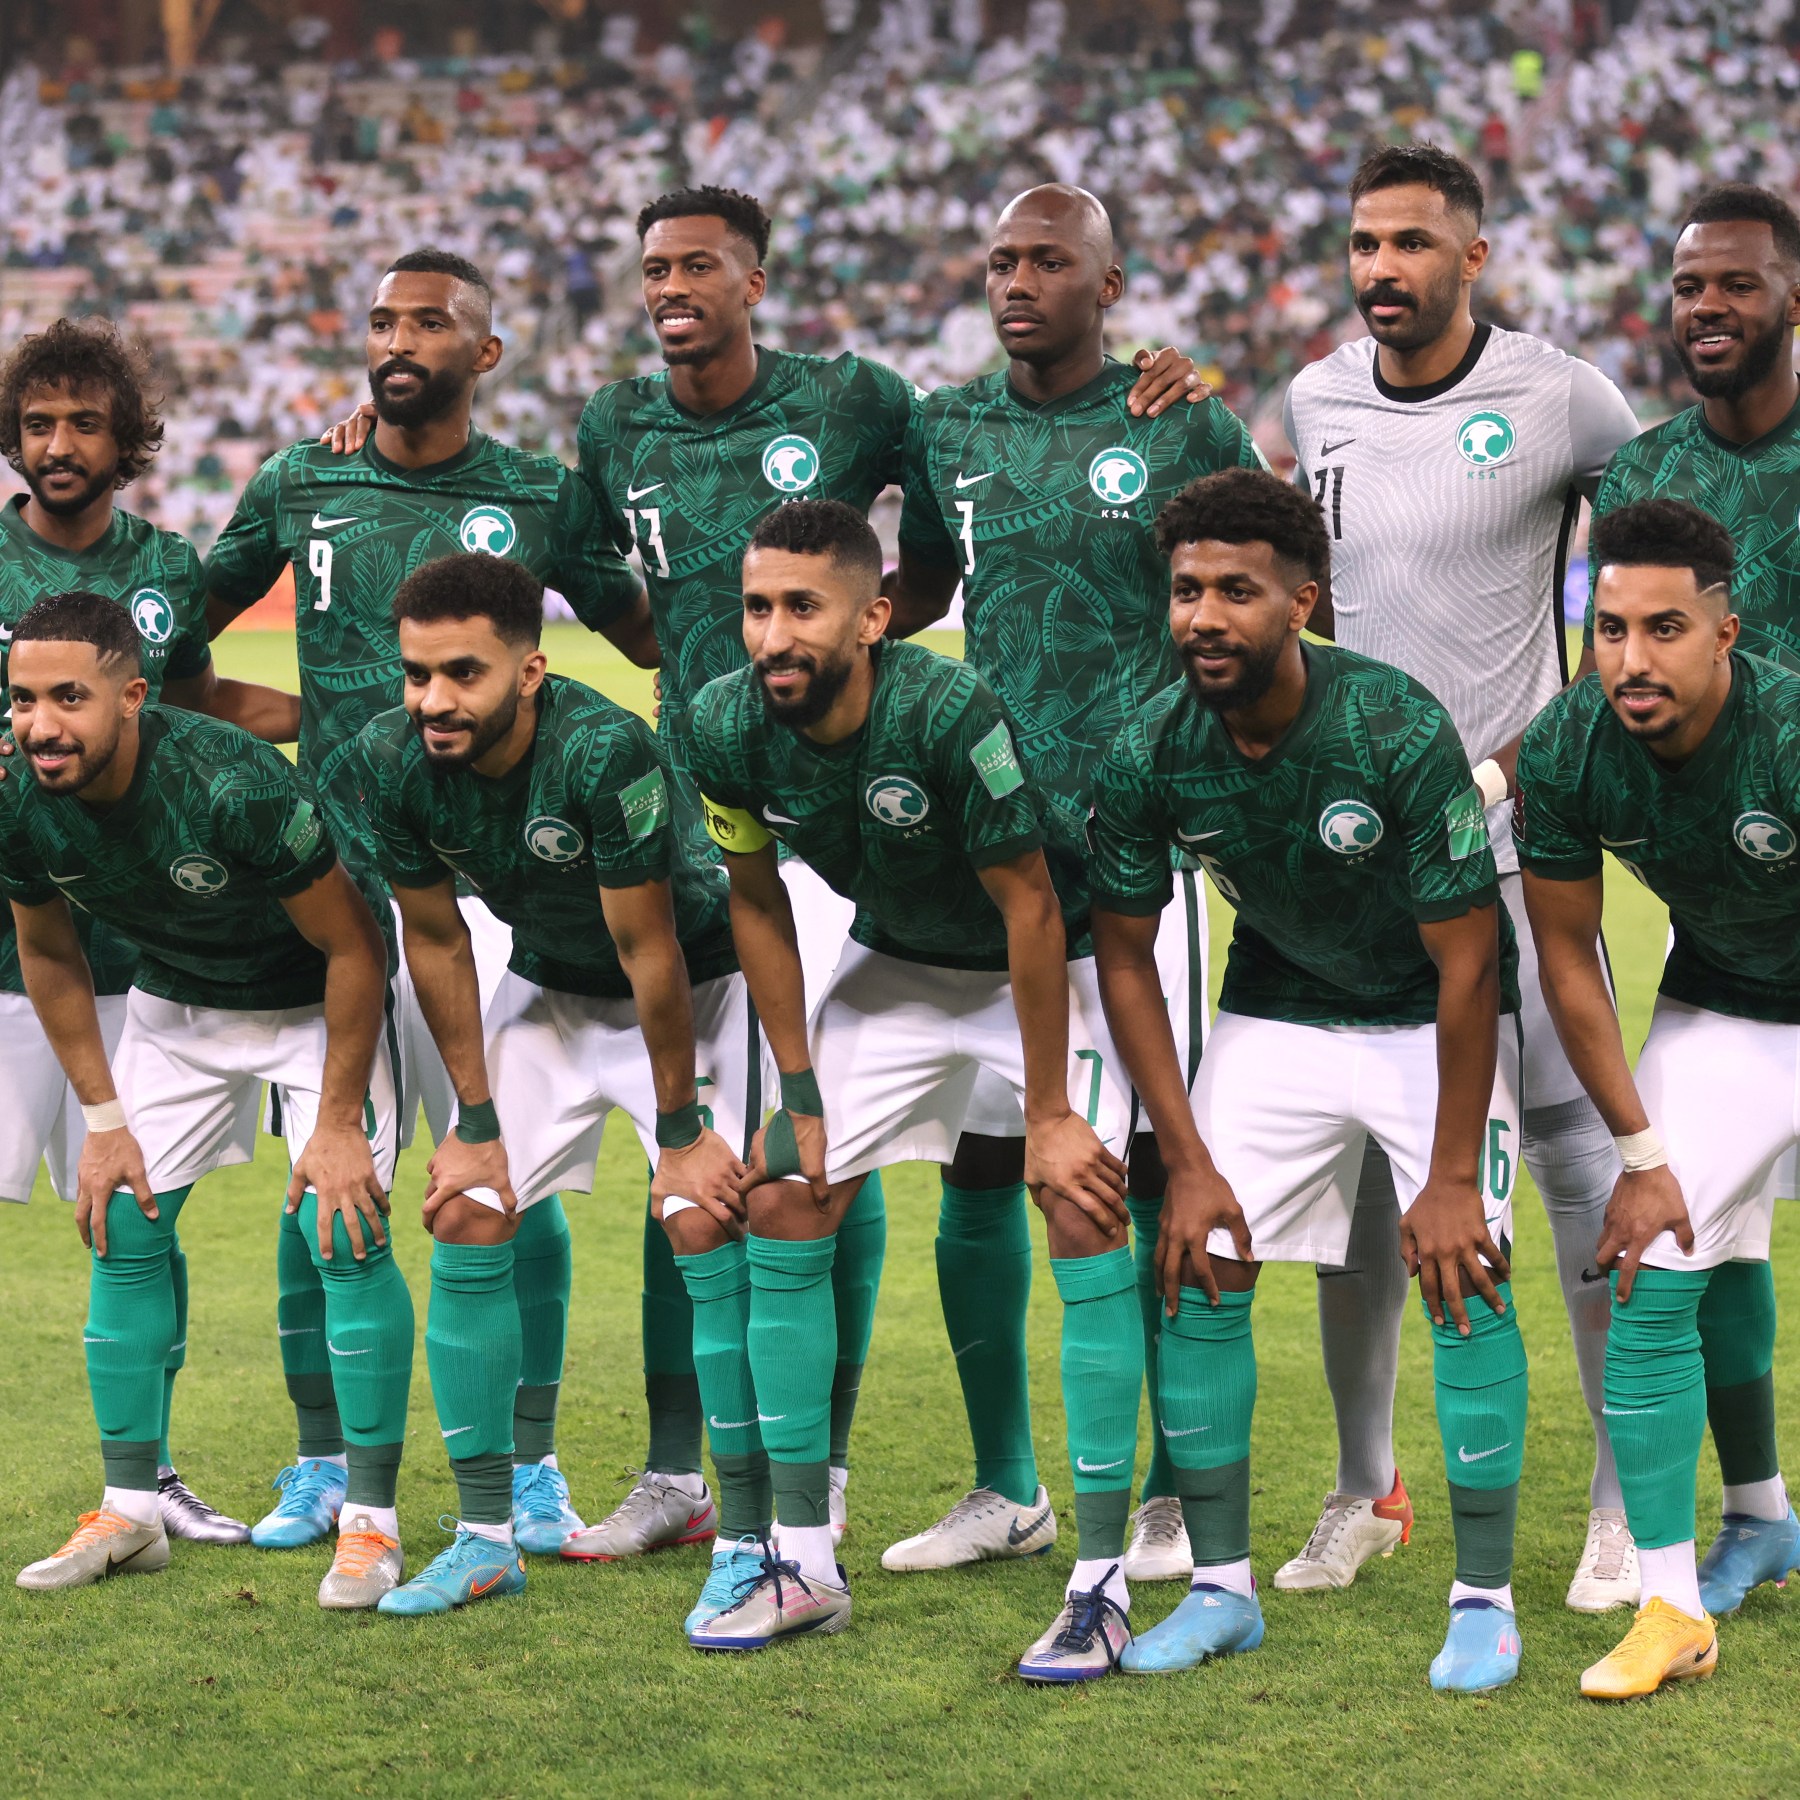 تشكيلة منتخب السعودية في كأس العالم 2022 | كرة قدم | الجزيرة نت